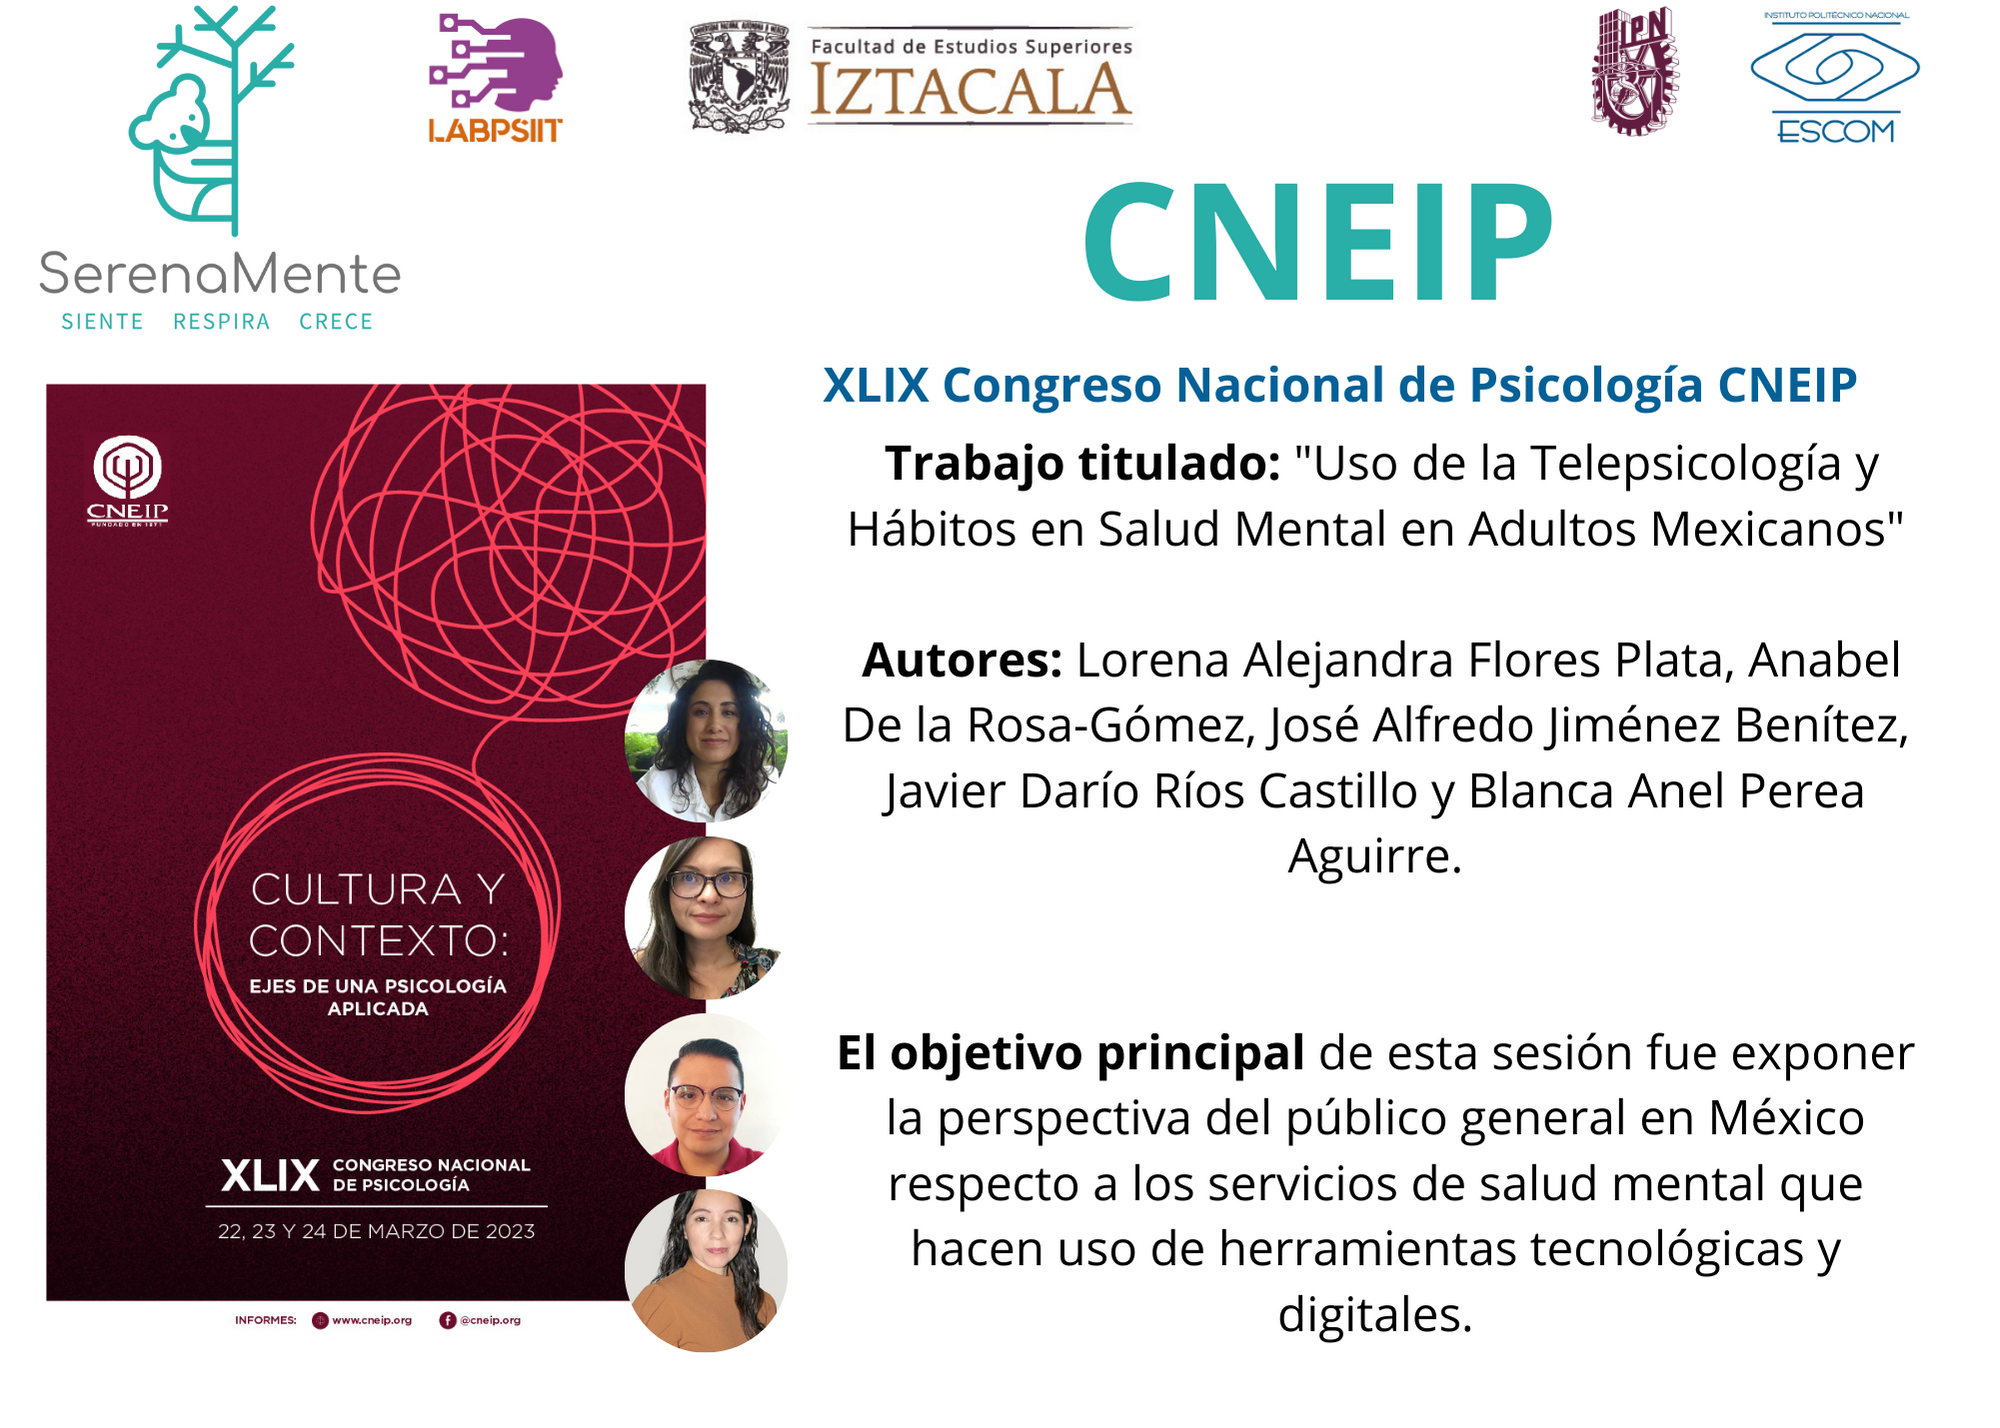 XLIX Congreso Nacional de Psicología CNEIP